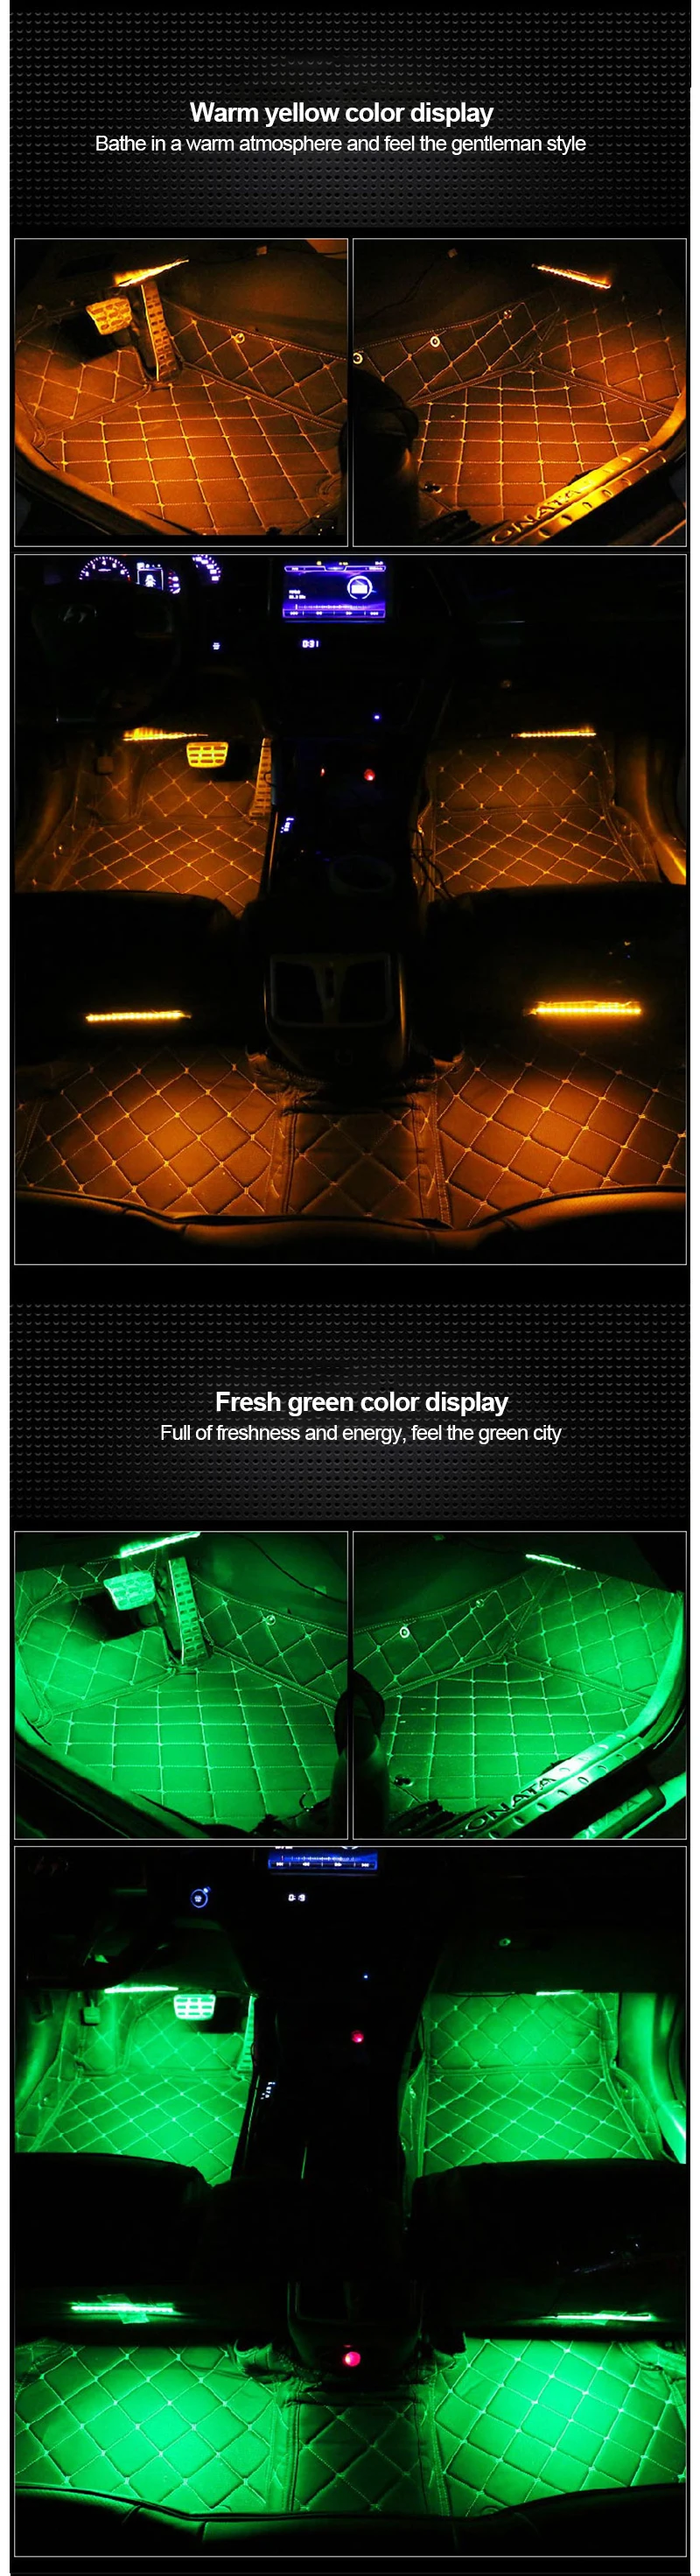 12 В Автомобильные светодиодные лампы rgb USB Авто Интерьер атмосферу декоративный светильник USB прикуриватель автомобиля атмосферные огни дистанционное управление